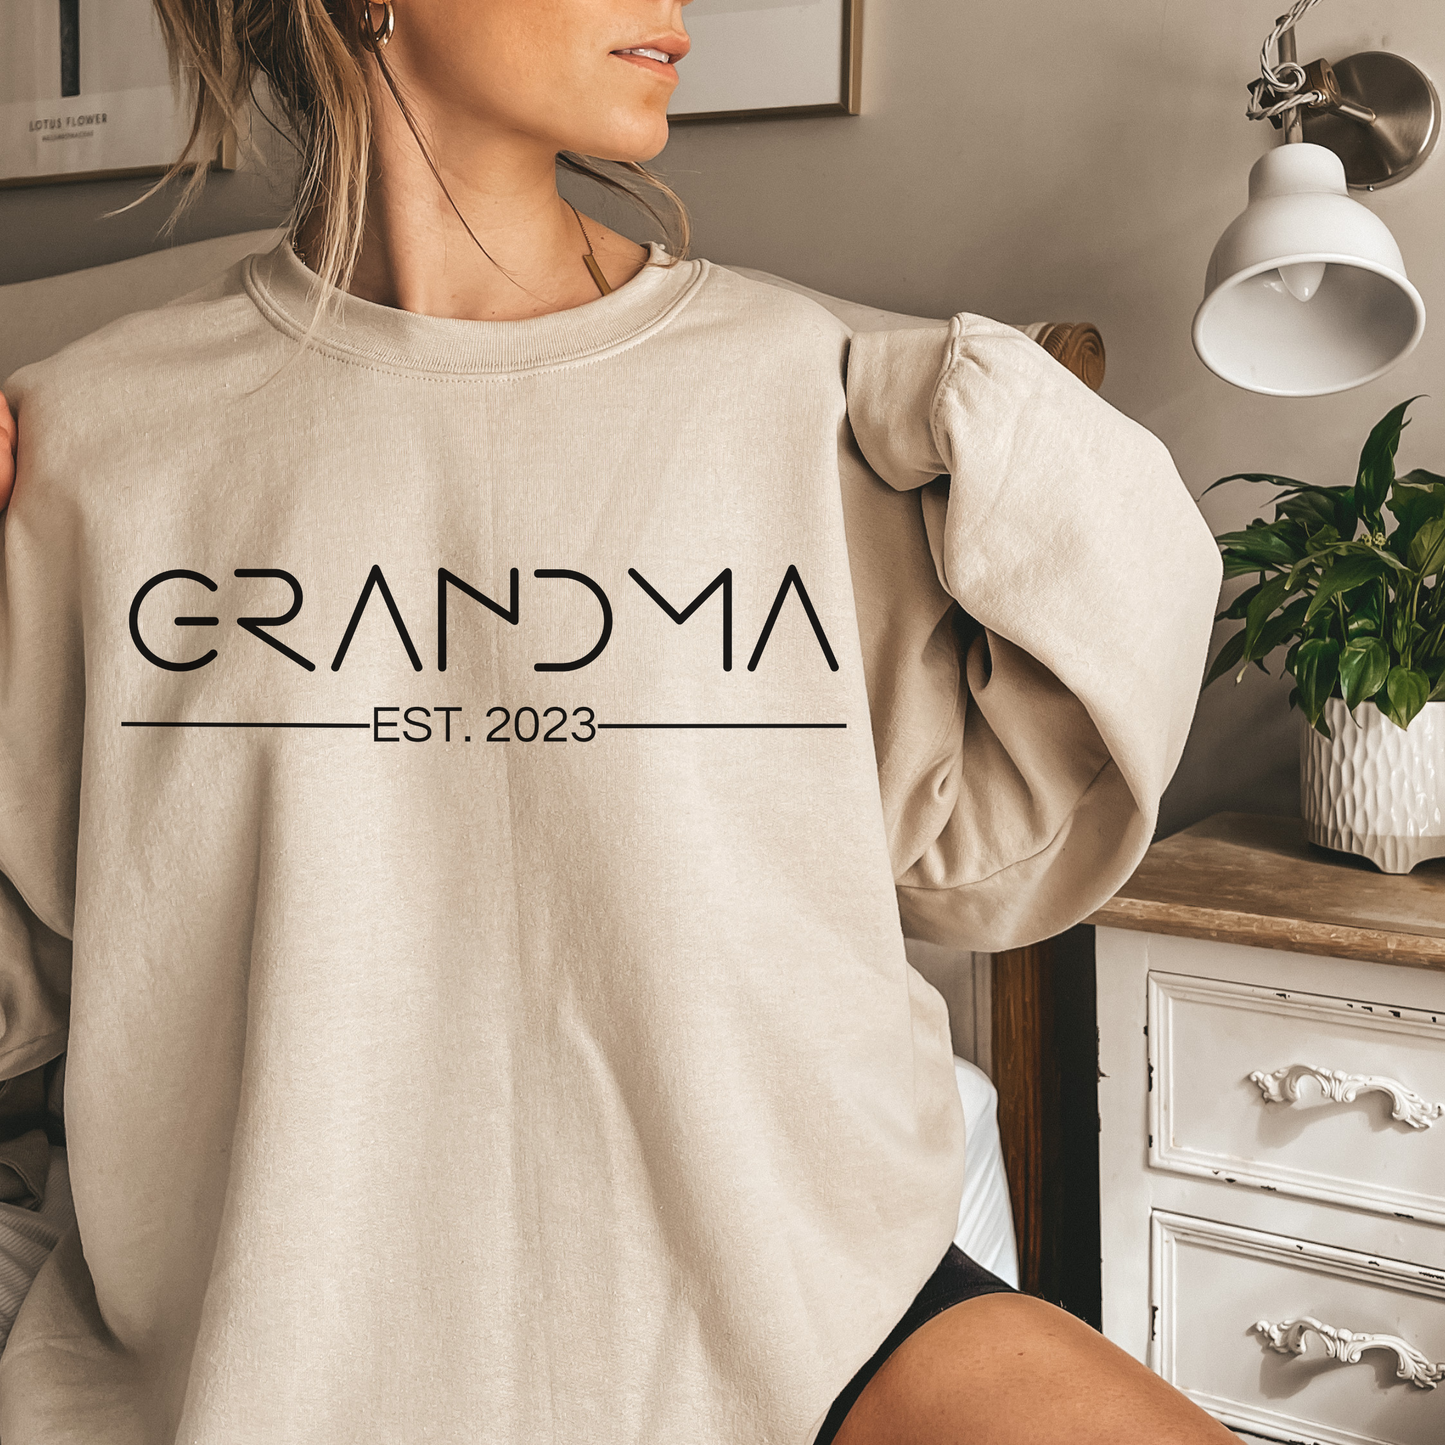 Minimalist Grandma Est Sweatshirt Grandma Established Top Grandma Shirt Gift for Grandma Birth Announcement Top Birth Announcement Top Gift